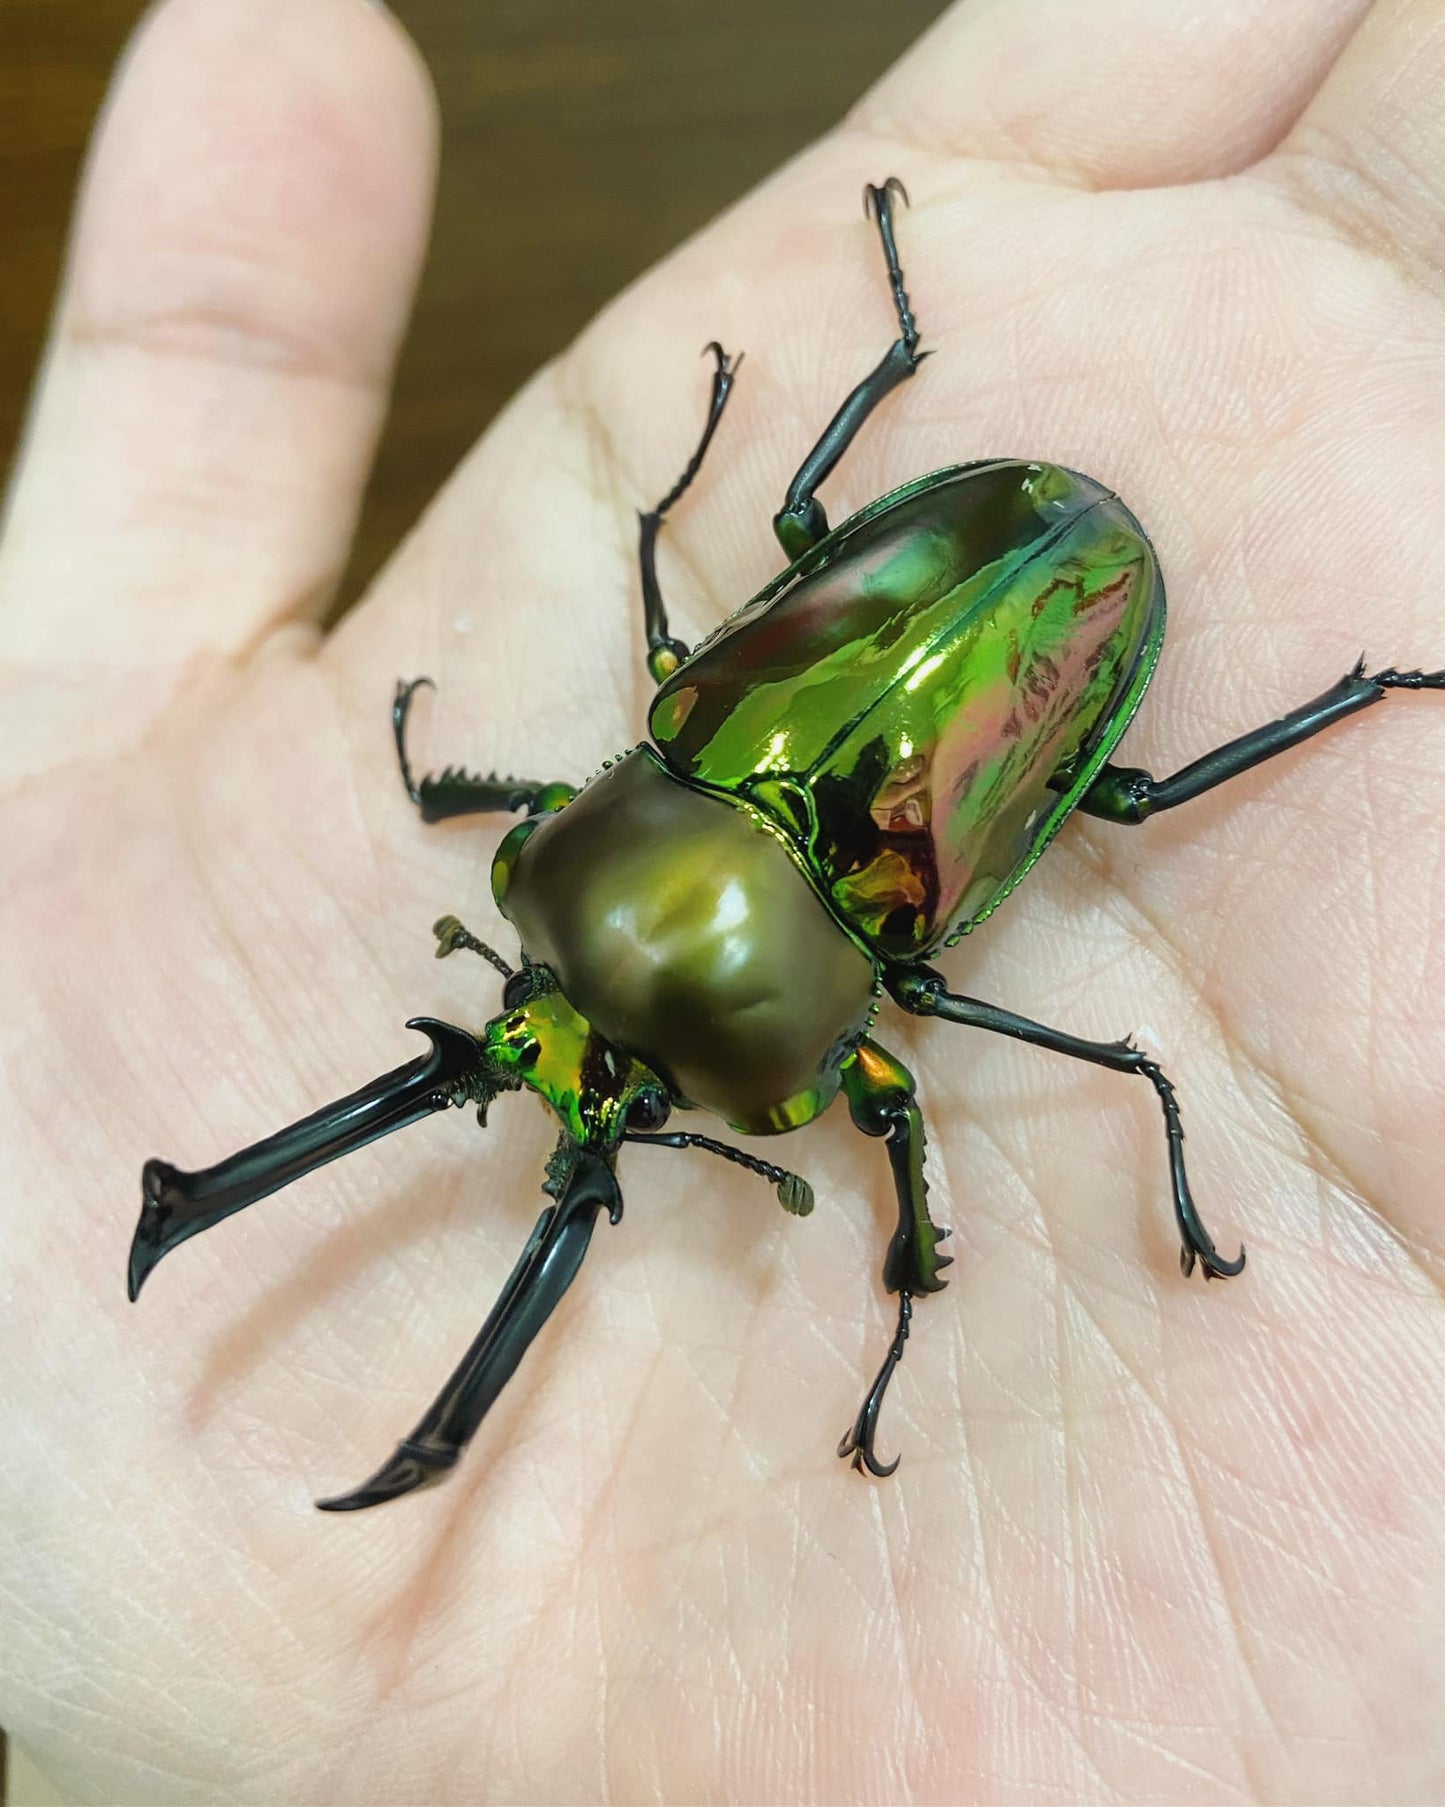 Green Rainbow Stag Beetle (Phalacrognathus muelleri)